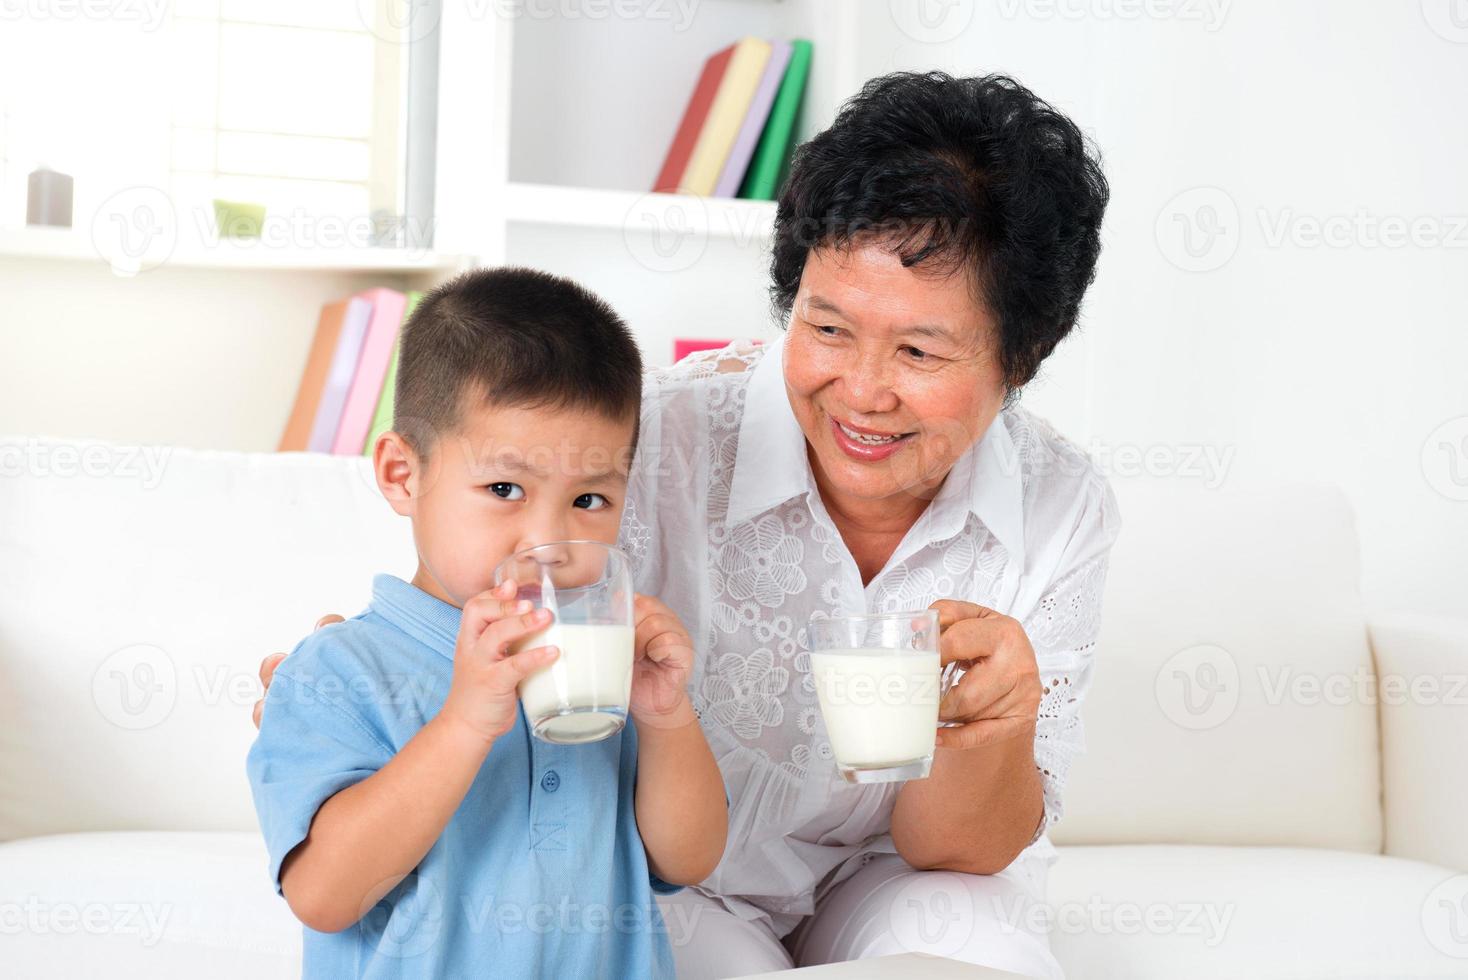 trinke zusammen Milch foto